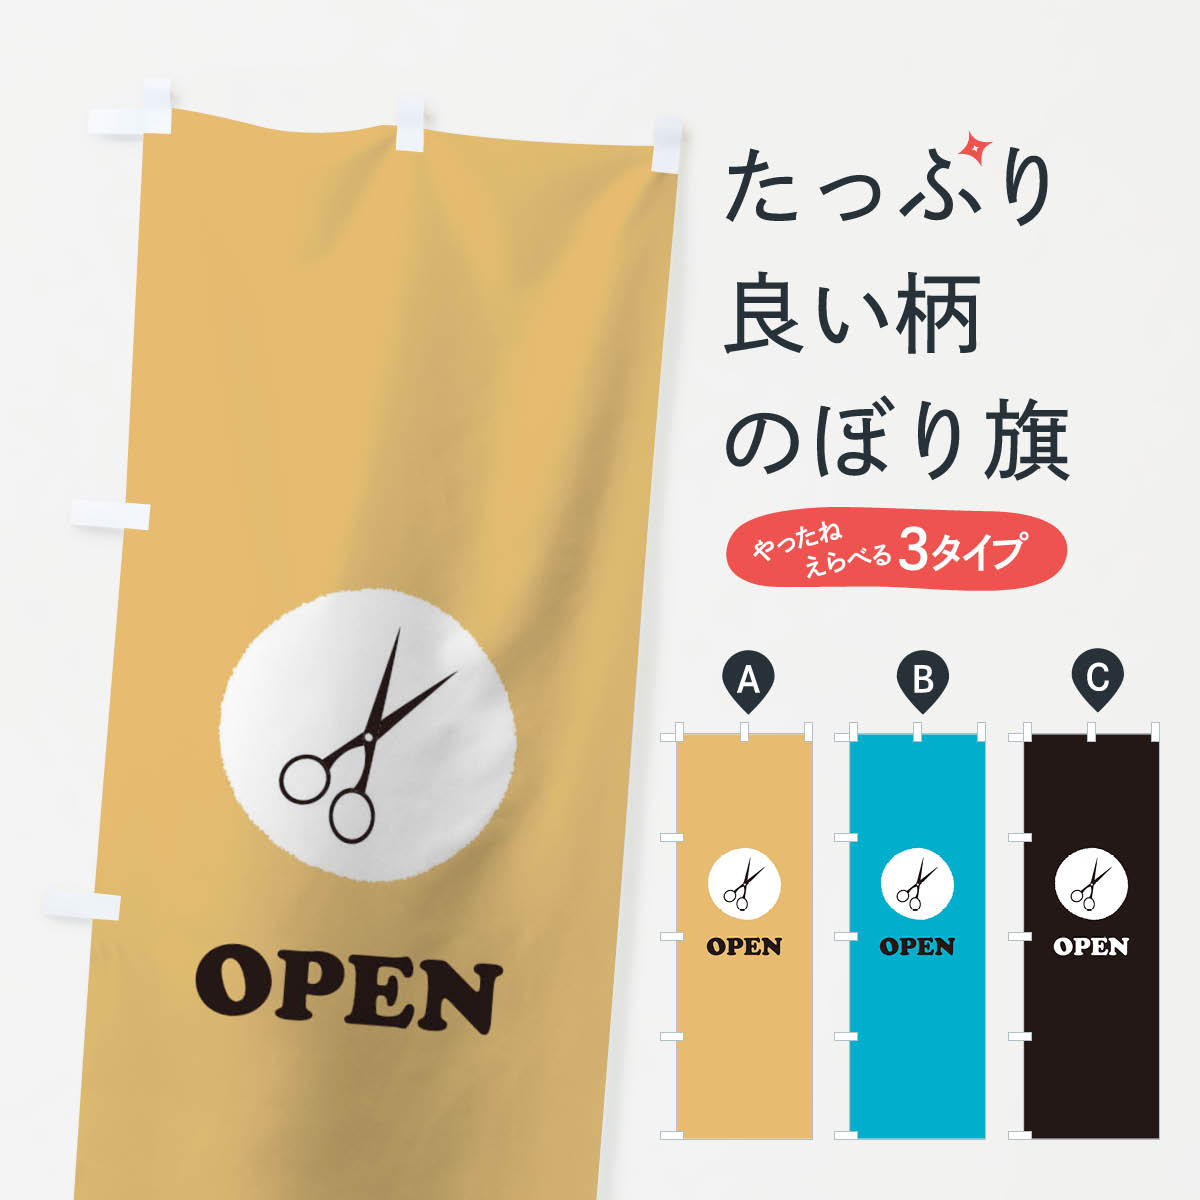 【3980送料無料】 のぼり旗 OPENのぼり 営業中 オープン 美容室 ヘアーサロン